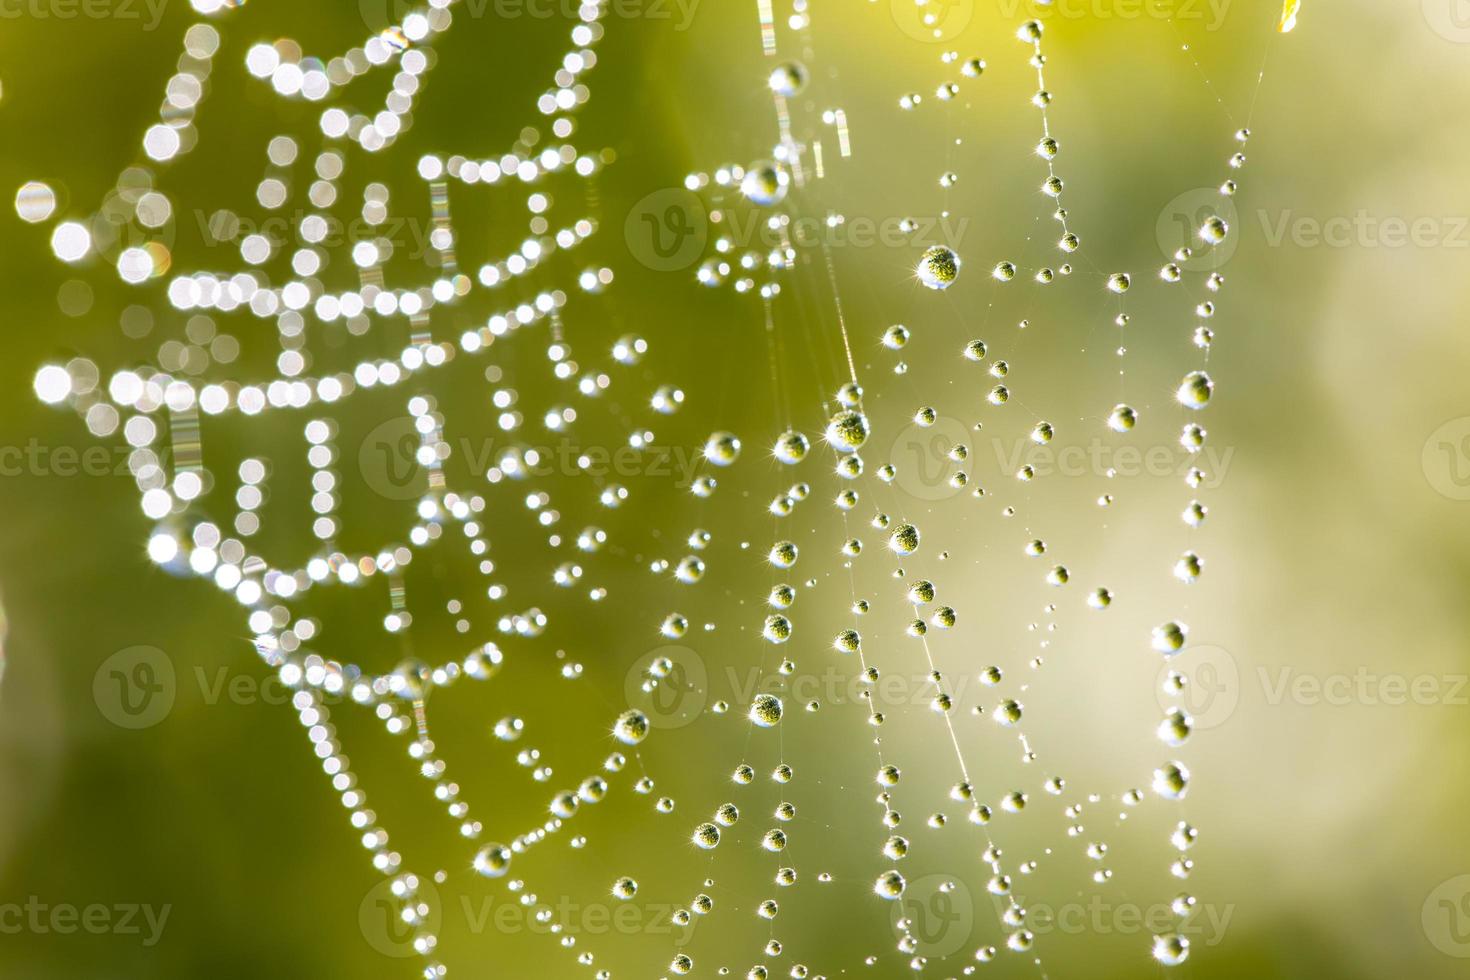 Spinnennetz mit Tau im Wind wiegende Nahaufnahme mit grünem, unscharfen Hintergrund foto